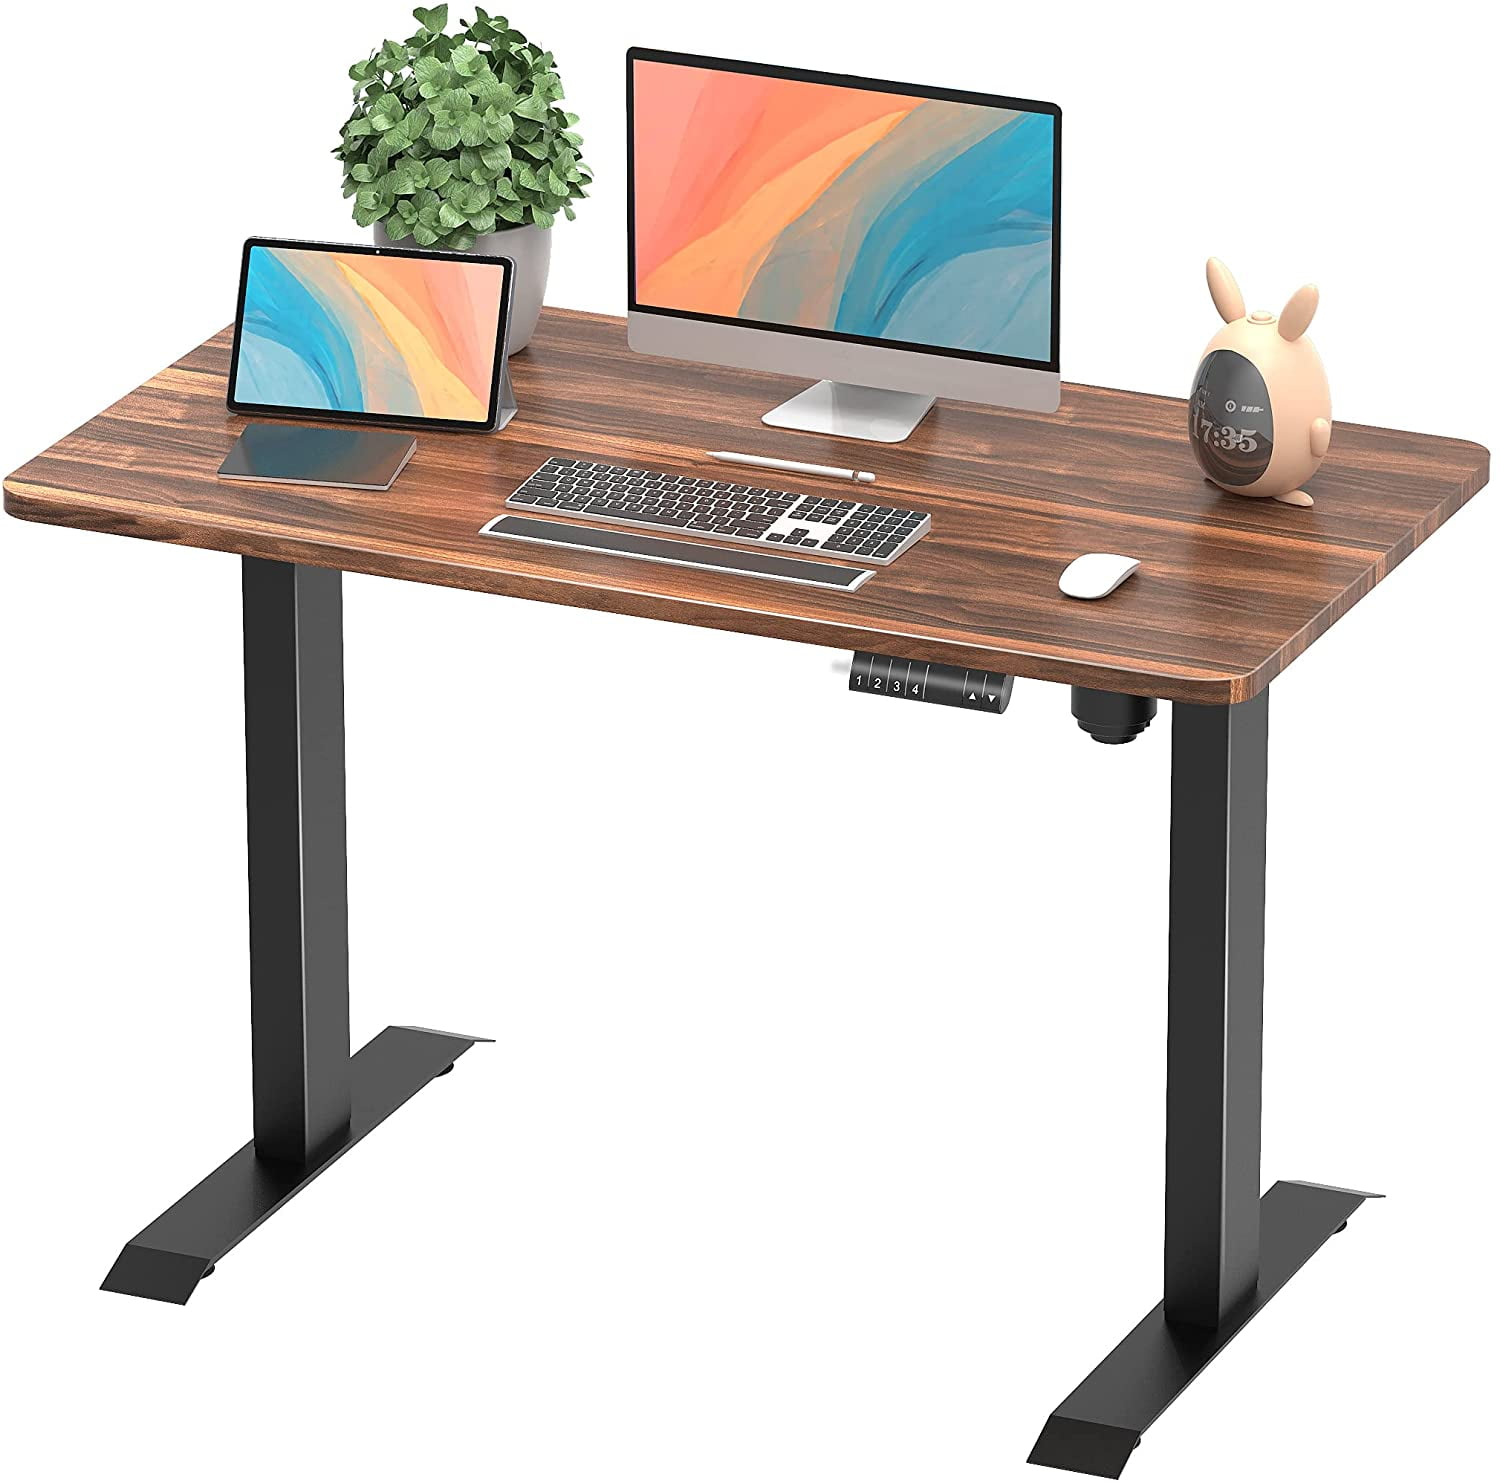 Modern Adjustable Height Desks For Versatile Use